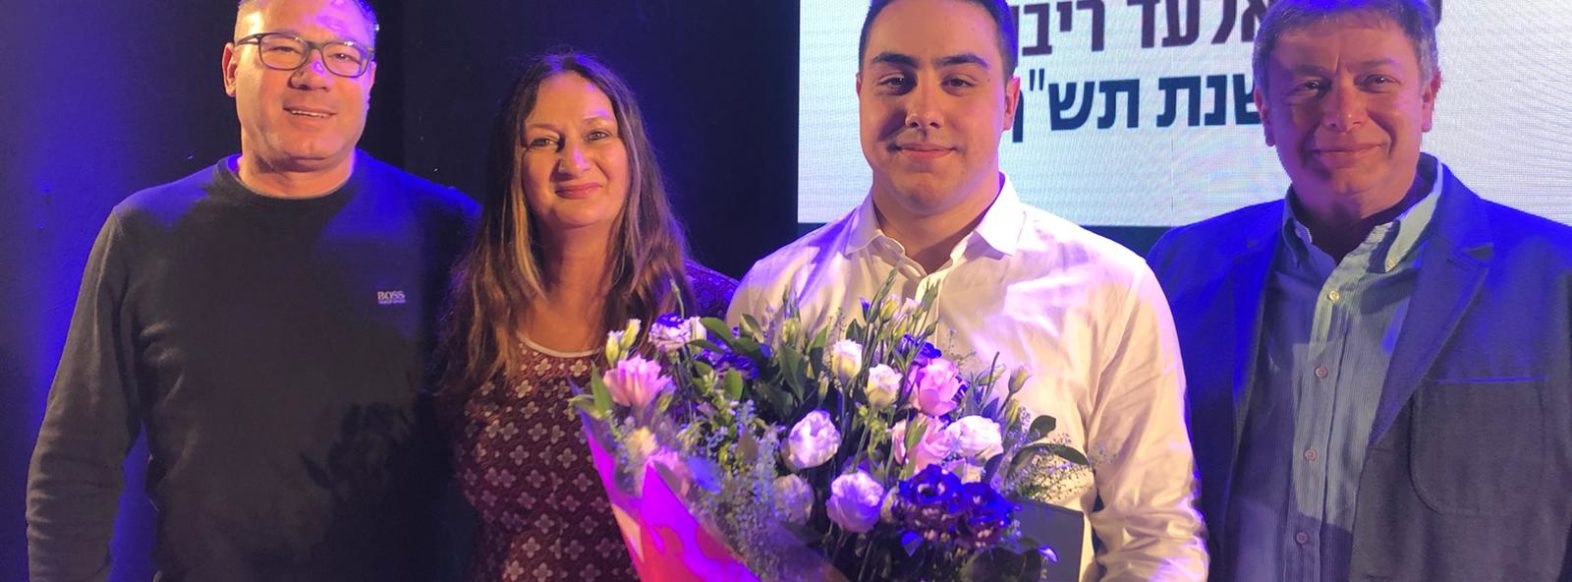 פרס שר החינוך לנוער מתנדב ע”ש אלעד ריבן ז”ל, הוענק לתלמיד אורט קריית ביאליק